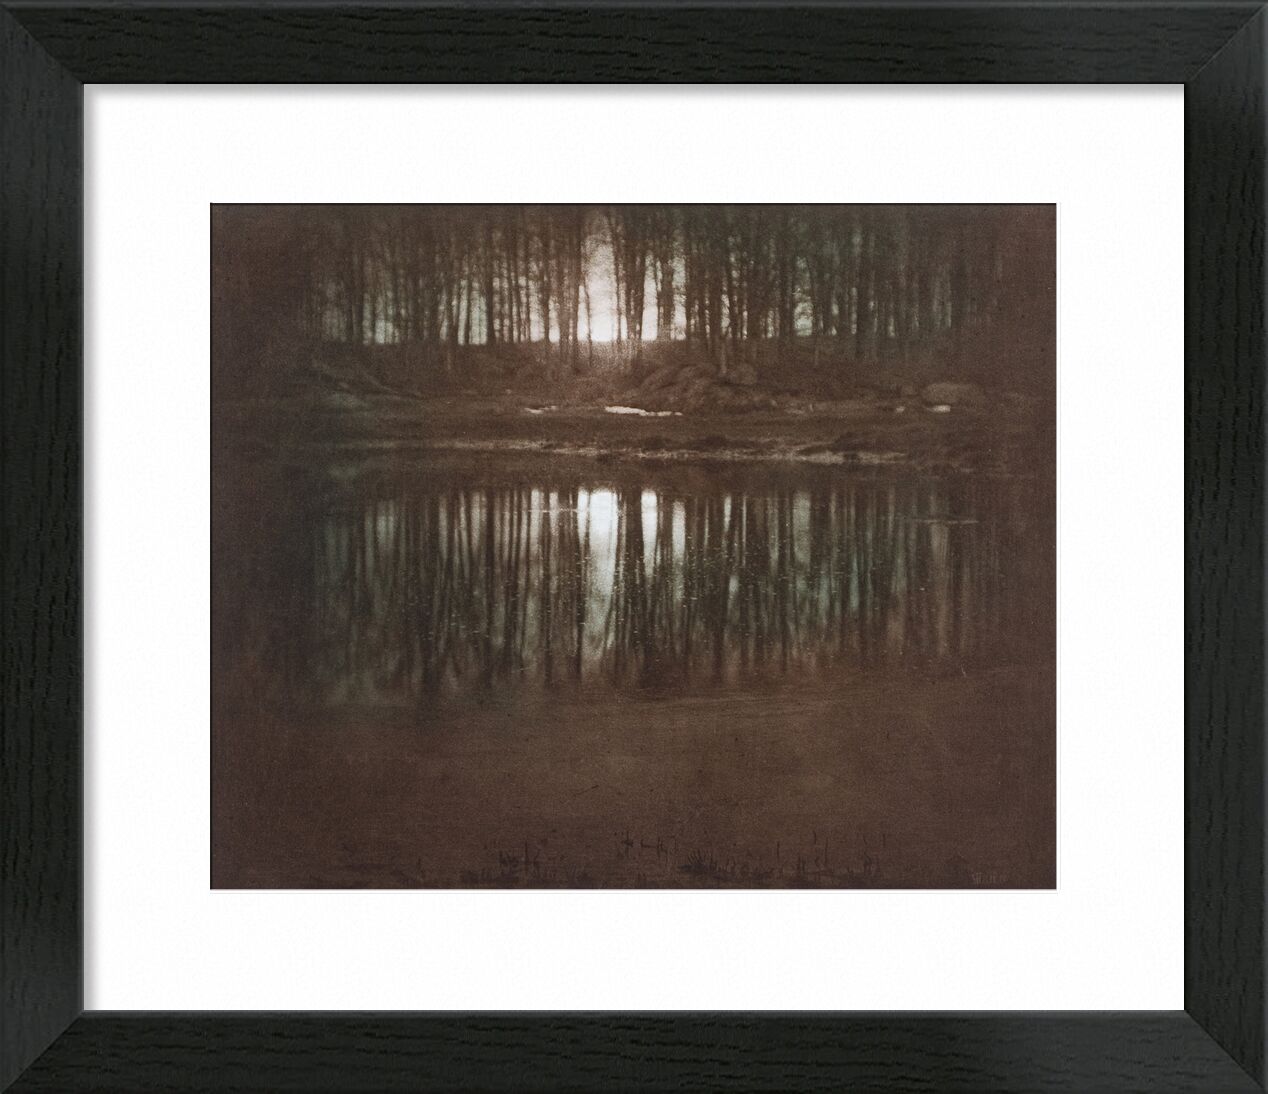 The Pond—Moonlight -Edward Steichen 1904 von Bildende Kunst, Prodi Art, Teich, Licht, Sonne, Sonnenuntergang, edward steichen, Schwarz und weiß, gegen tag